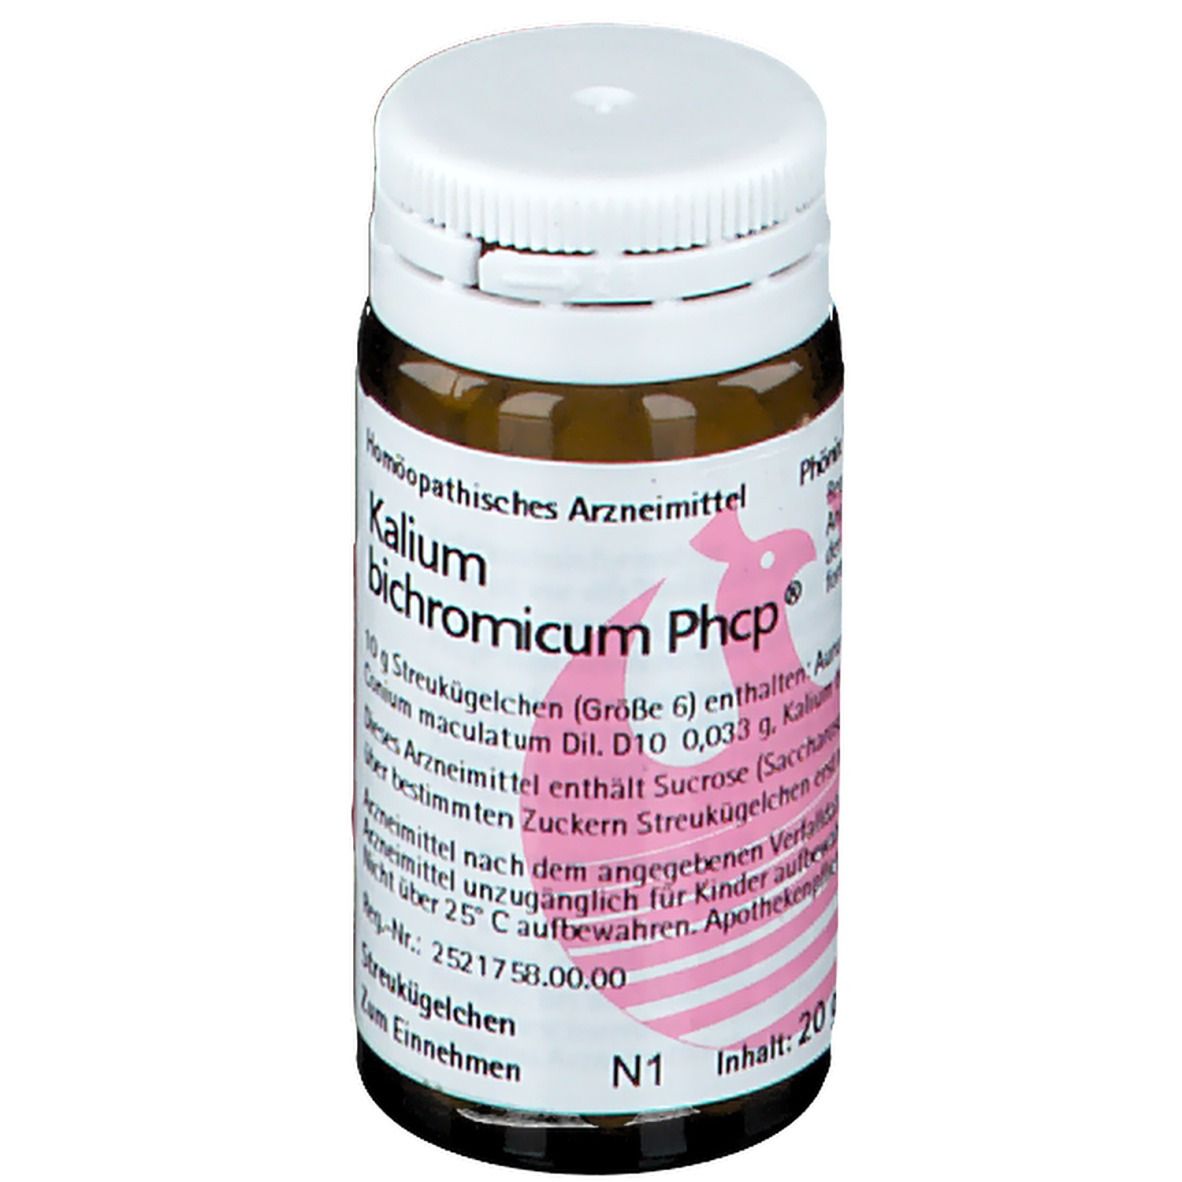 Kalium bichromicum Phcp®